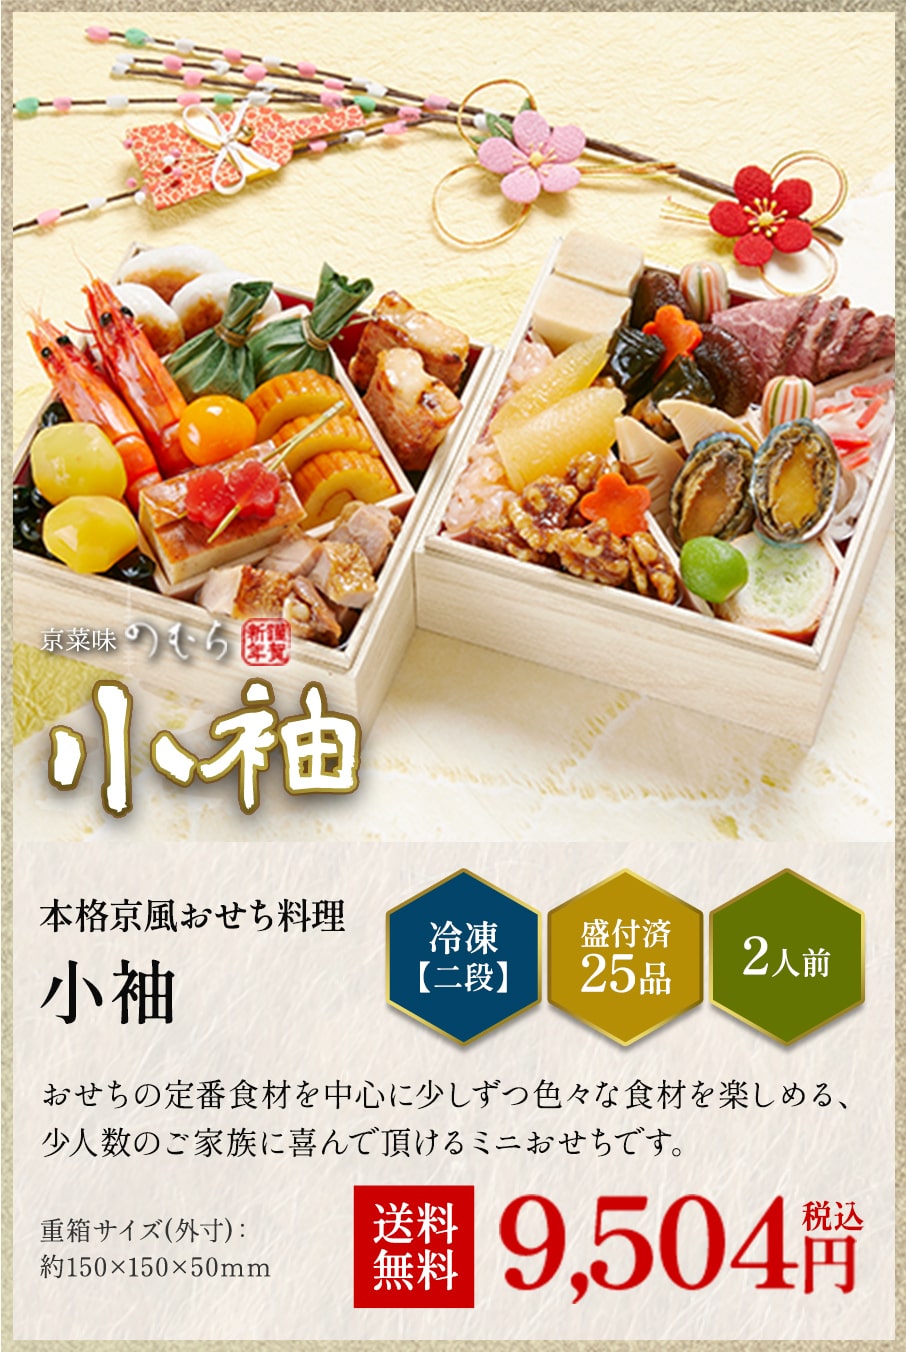 本格京風おせち料理「小袖」冷凍二段 盛付済み25品 2人前 9,504円